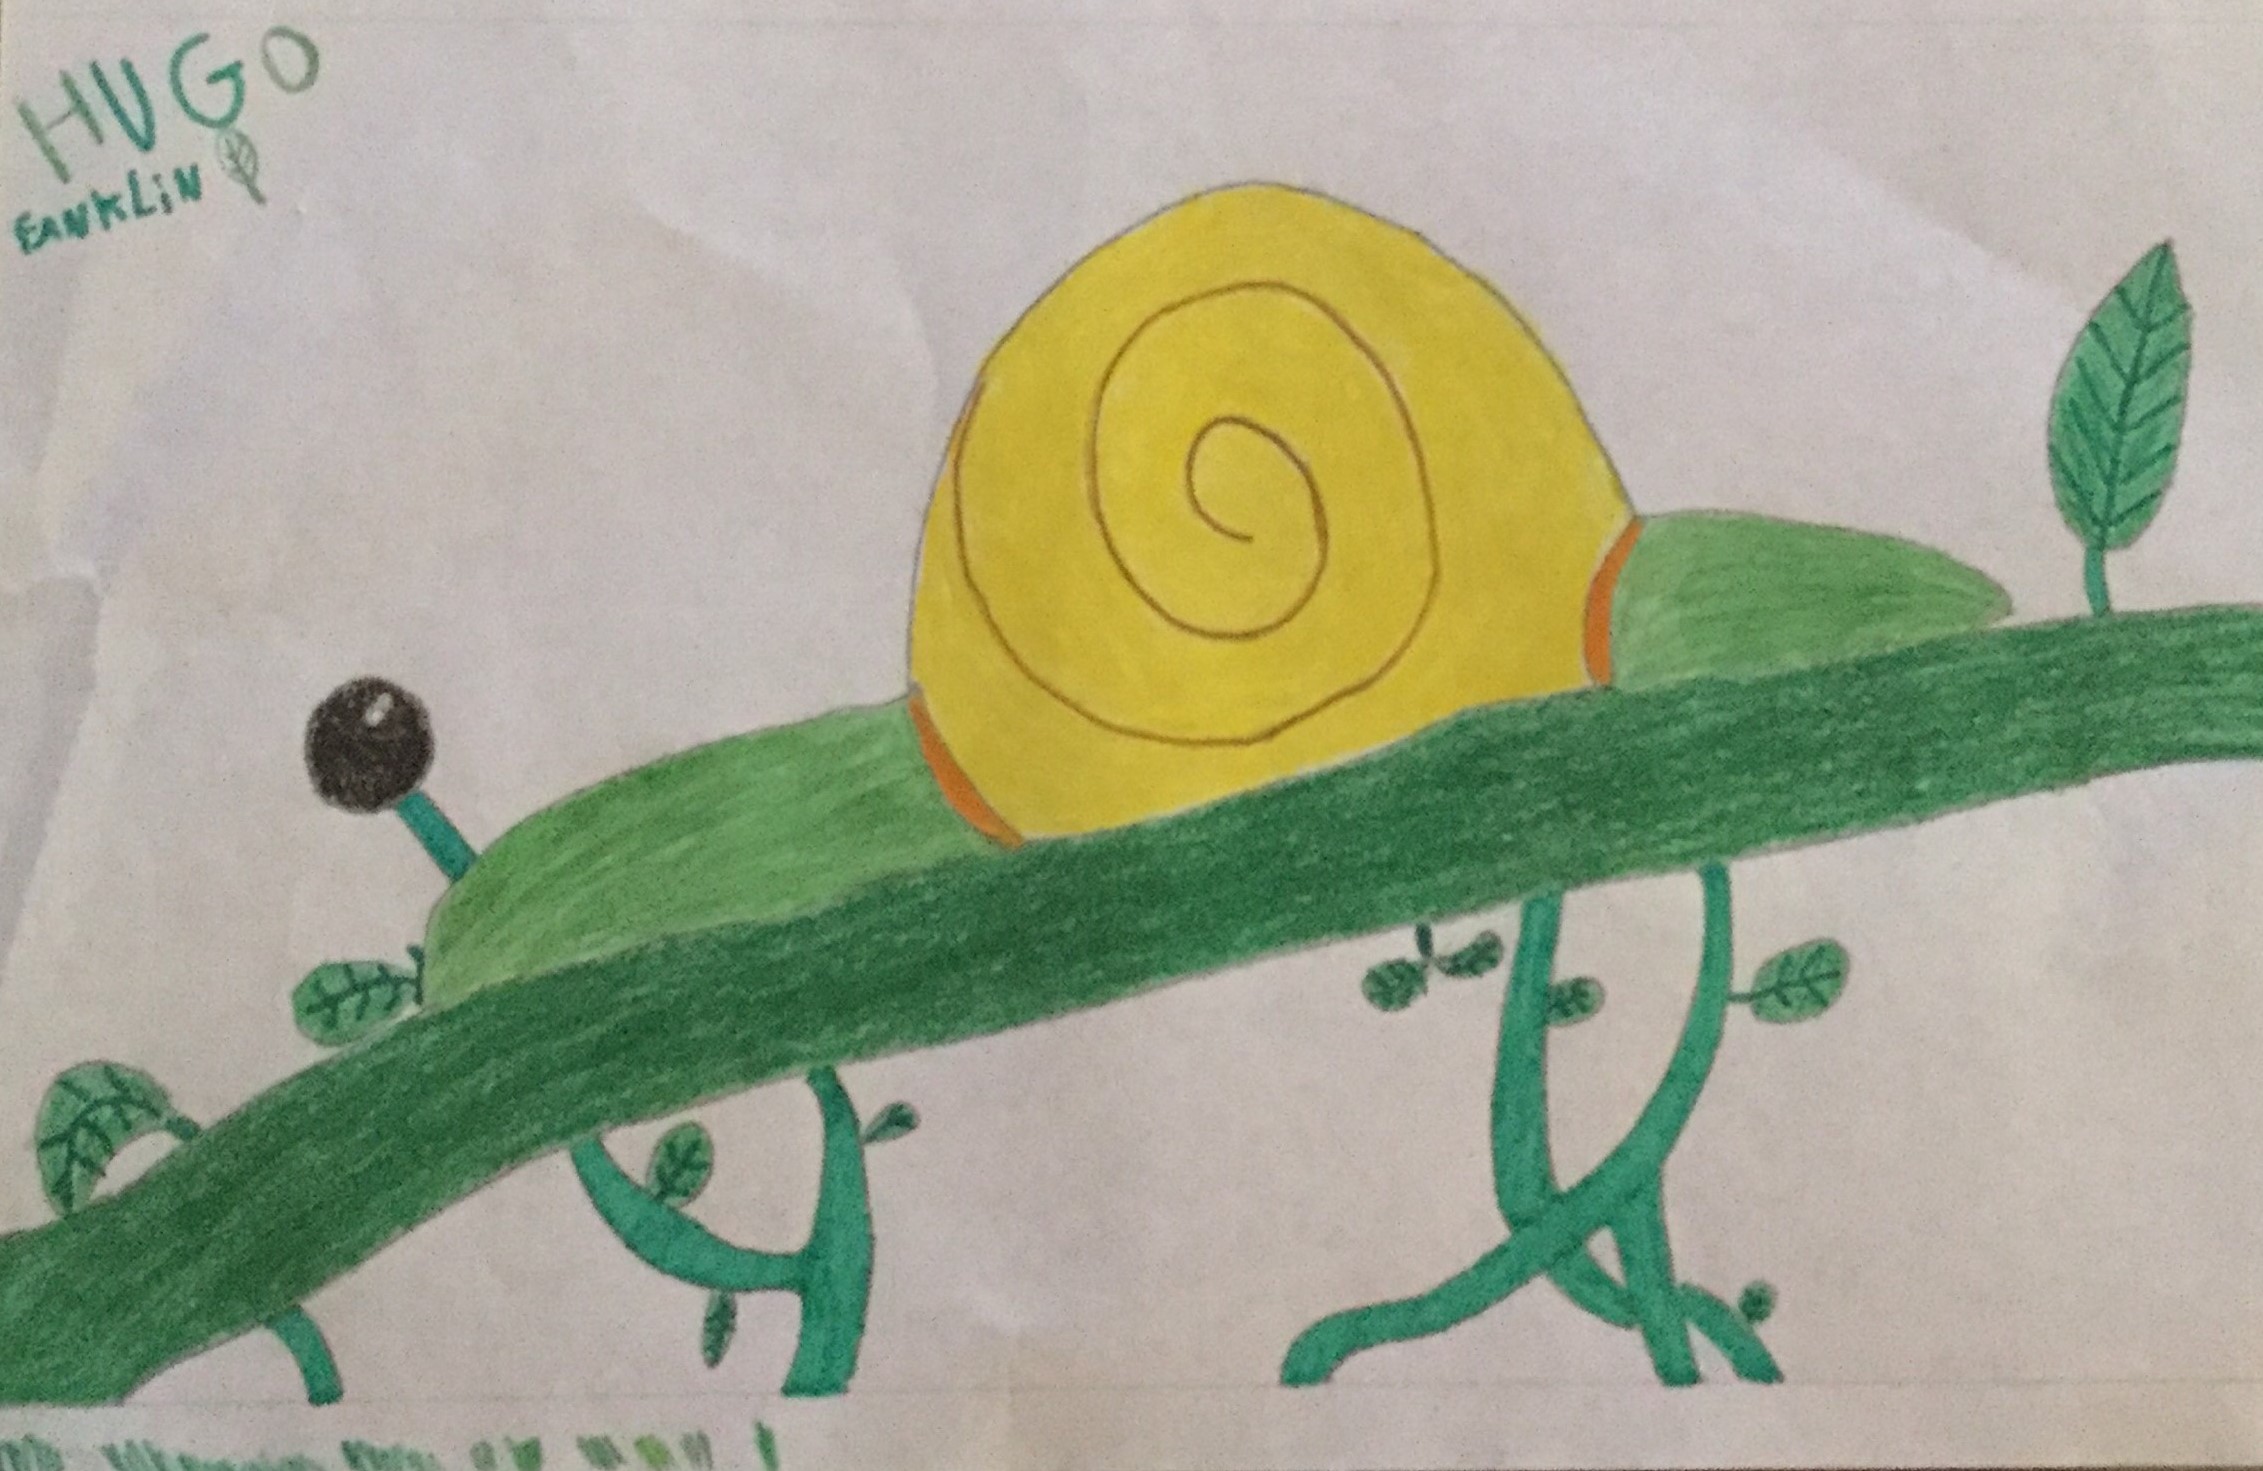 Caracol - A fotografia é uma ilustração do caracol, que foi feita por um aluno do 6ºano, pertencente ao Clube do Ambiente da Escola.